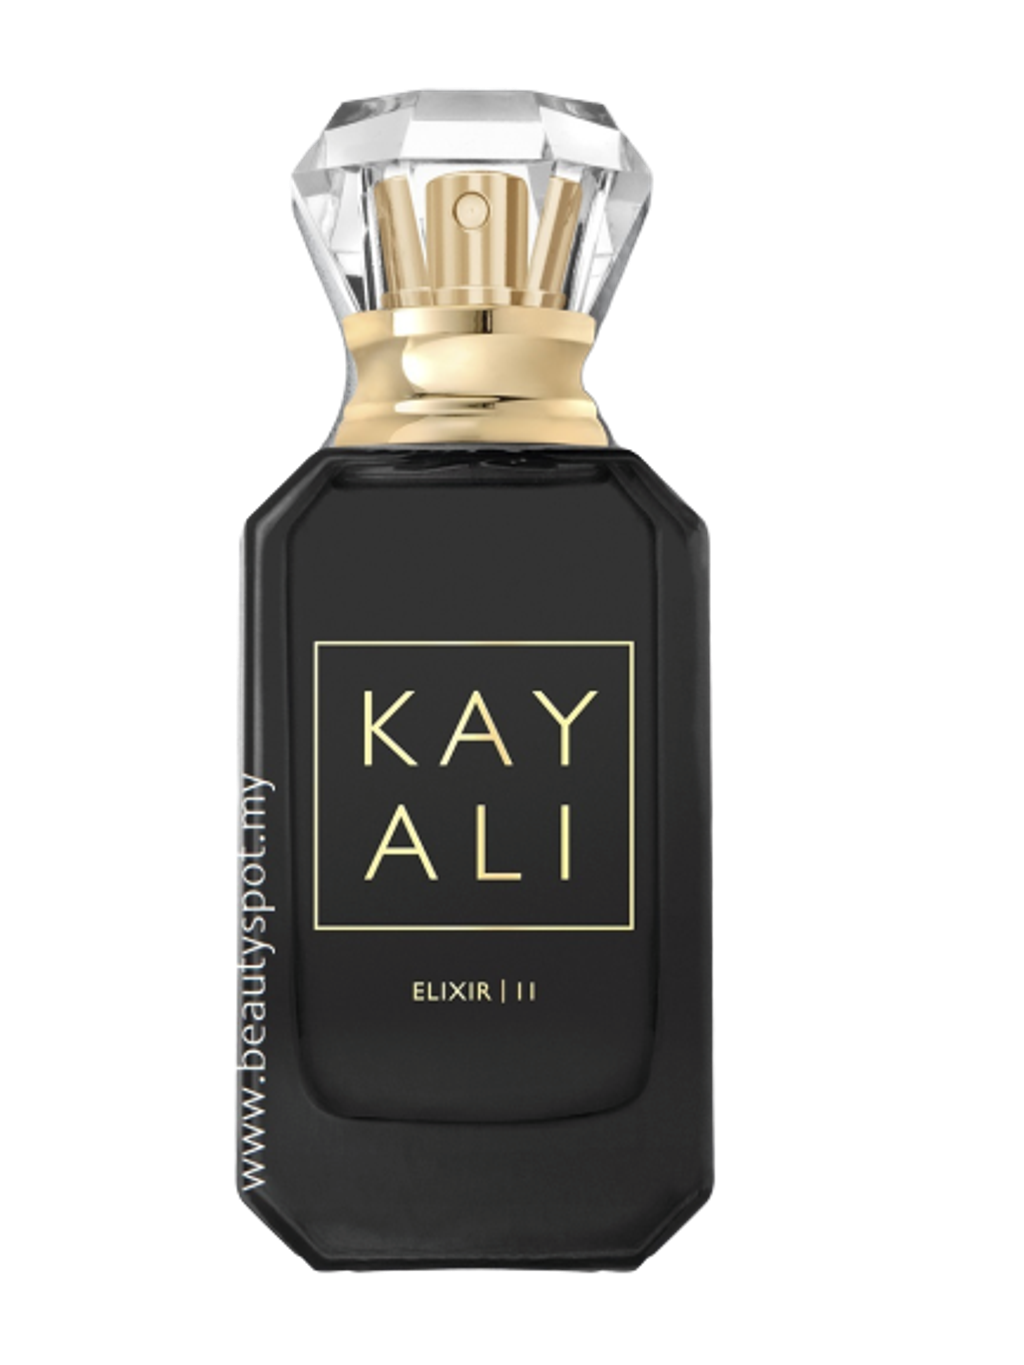 HUDA BEAUTY Kayali Elixir I 11 Eau de Parfum 10ml – Beautyspot ...